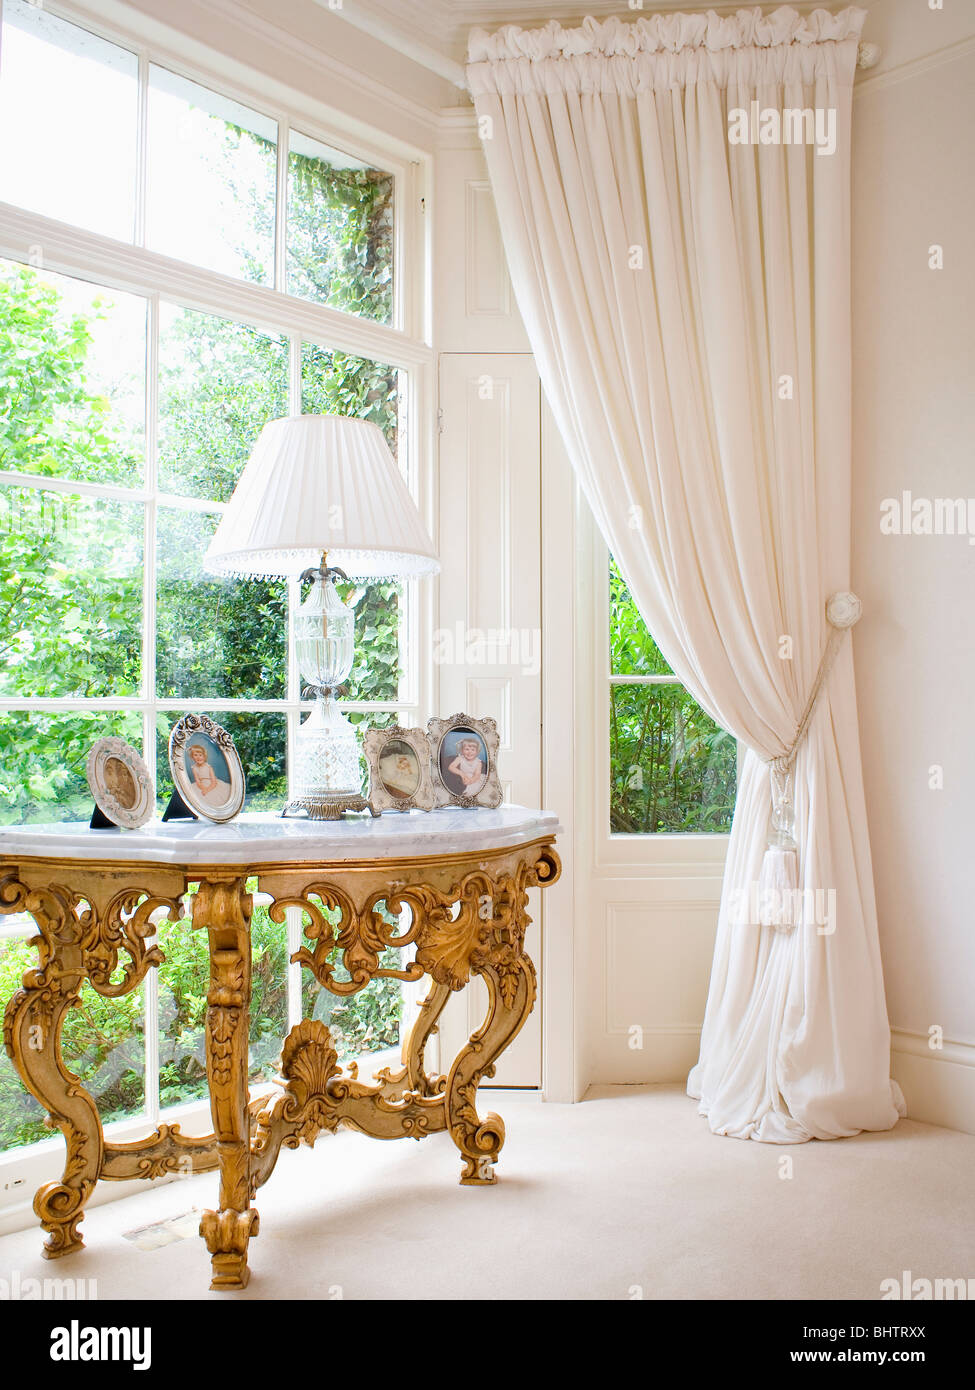 Recouvert de marbre antique gilt table console en baie vitrée avec rideaux crème Banque D'Images